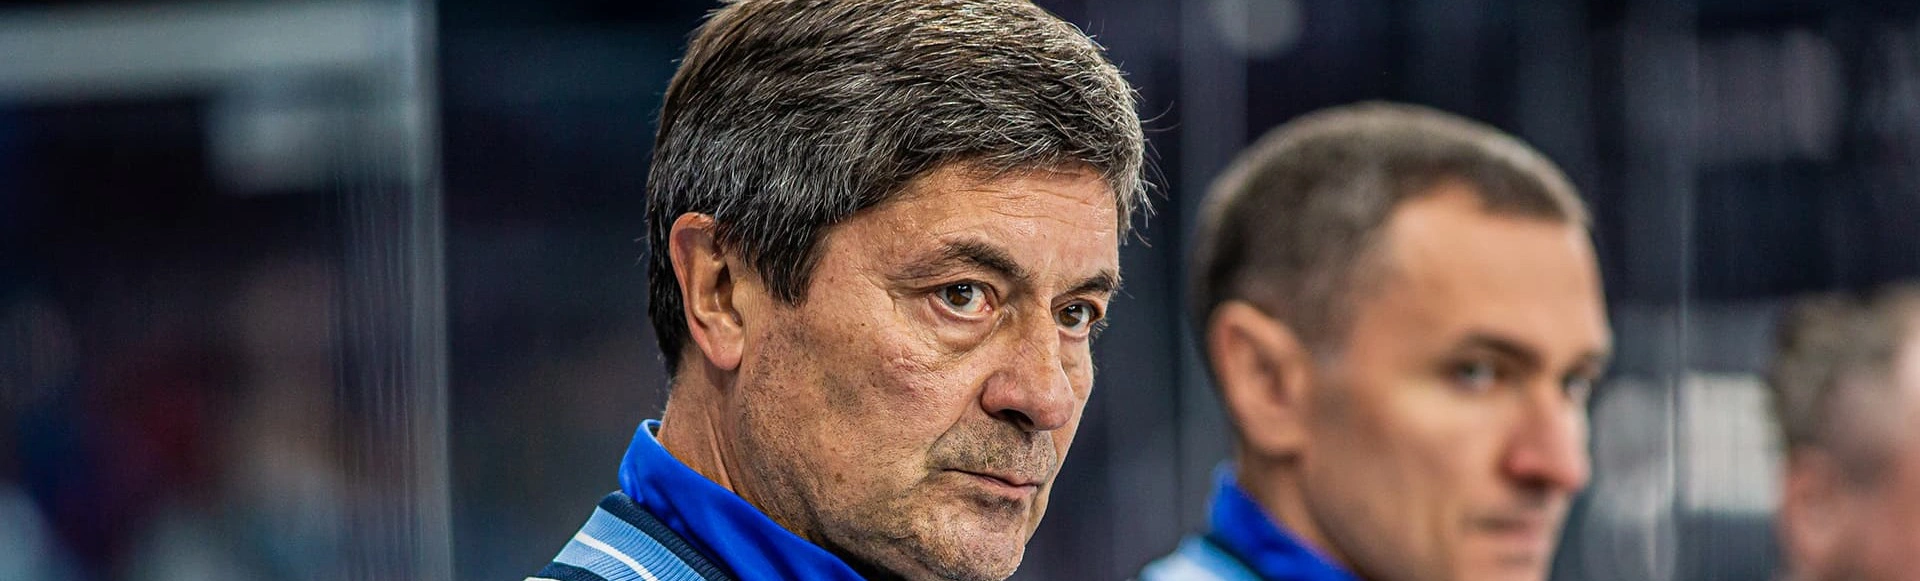 Мартемьянов продолжит работу в качестве главного тренера «Сибири»